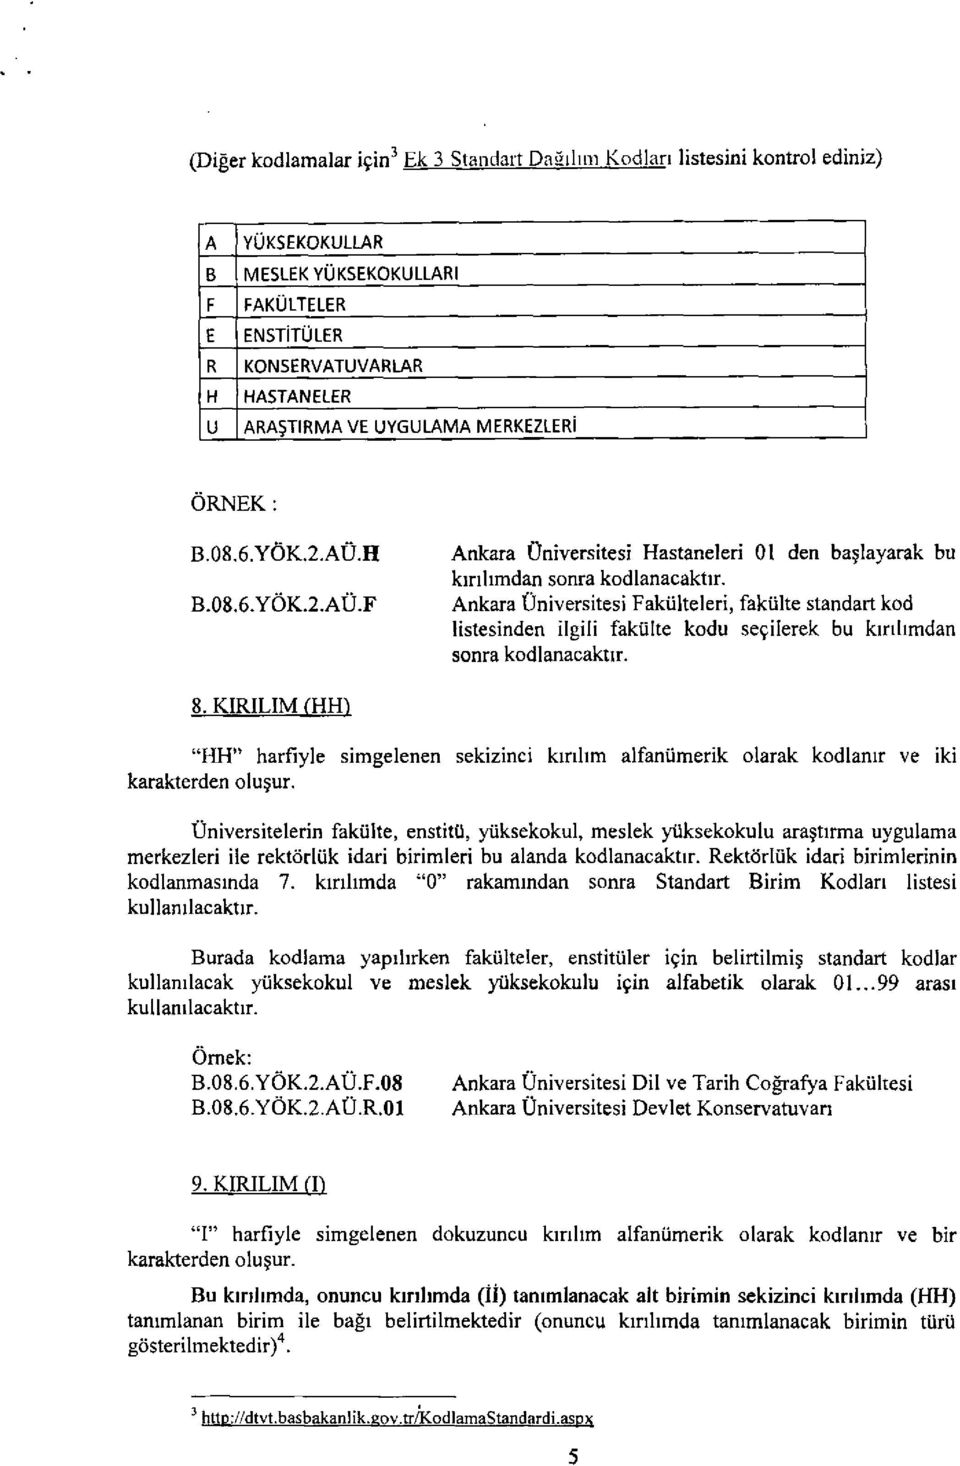 Ankara Üniversitesi Fakülteleri, fakülte standart kod üstesinden ilgili fakülte kodu seçilerek bu kınlımdan sonra kodlanacaktır. 8. KİRİLİM (HEP "HH" harfiyle karakterden oluşur.